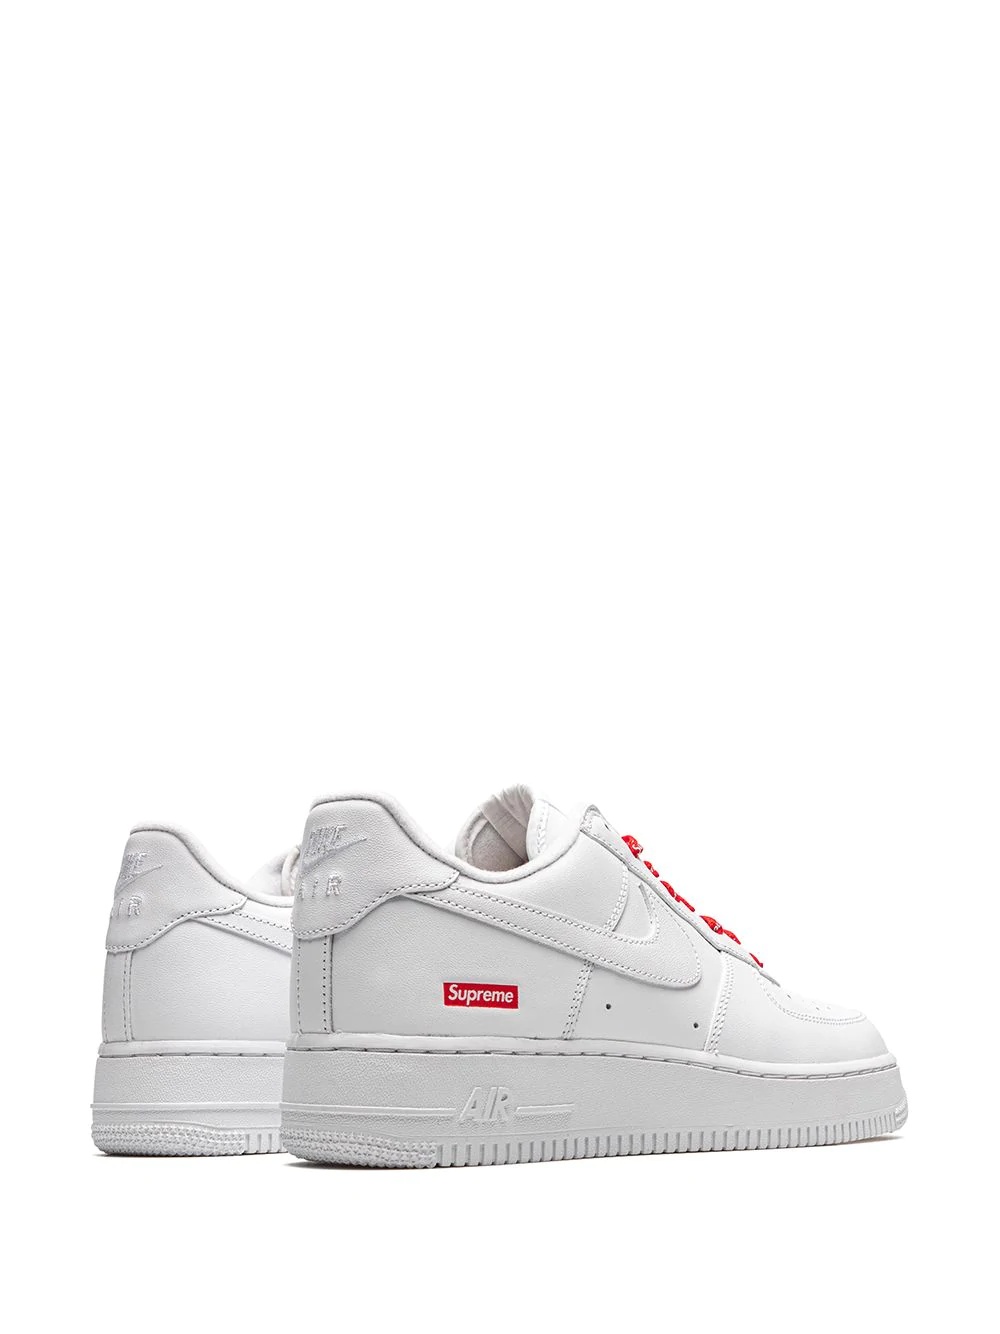 x Supreme Air Force 1 Low "Mini Box Logo White" sneakers - 3